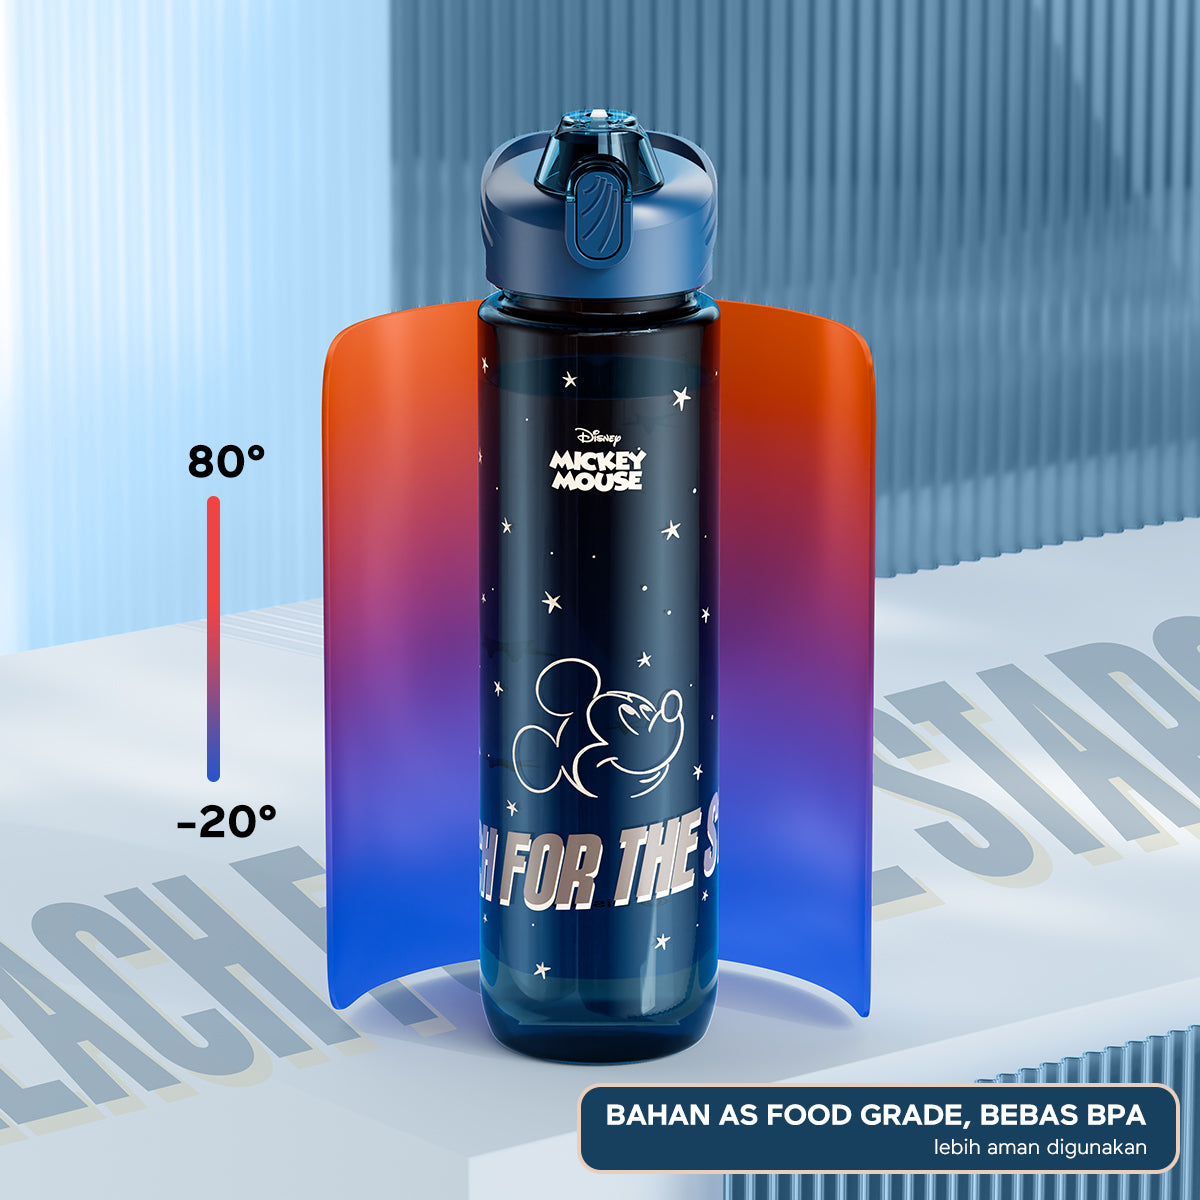 Pemesanan Awal!🌟ecentio Disney botol minum 1000ml Portable Water Tumbler Botol 1 Liter